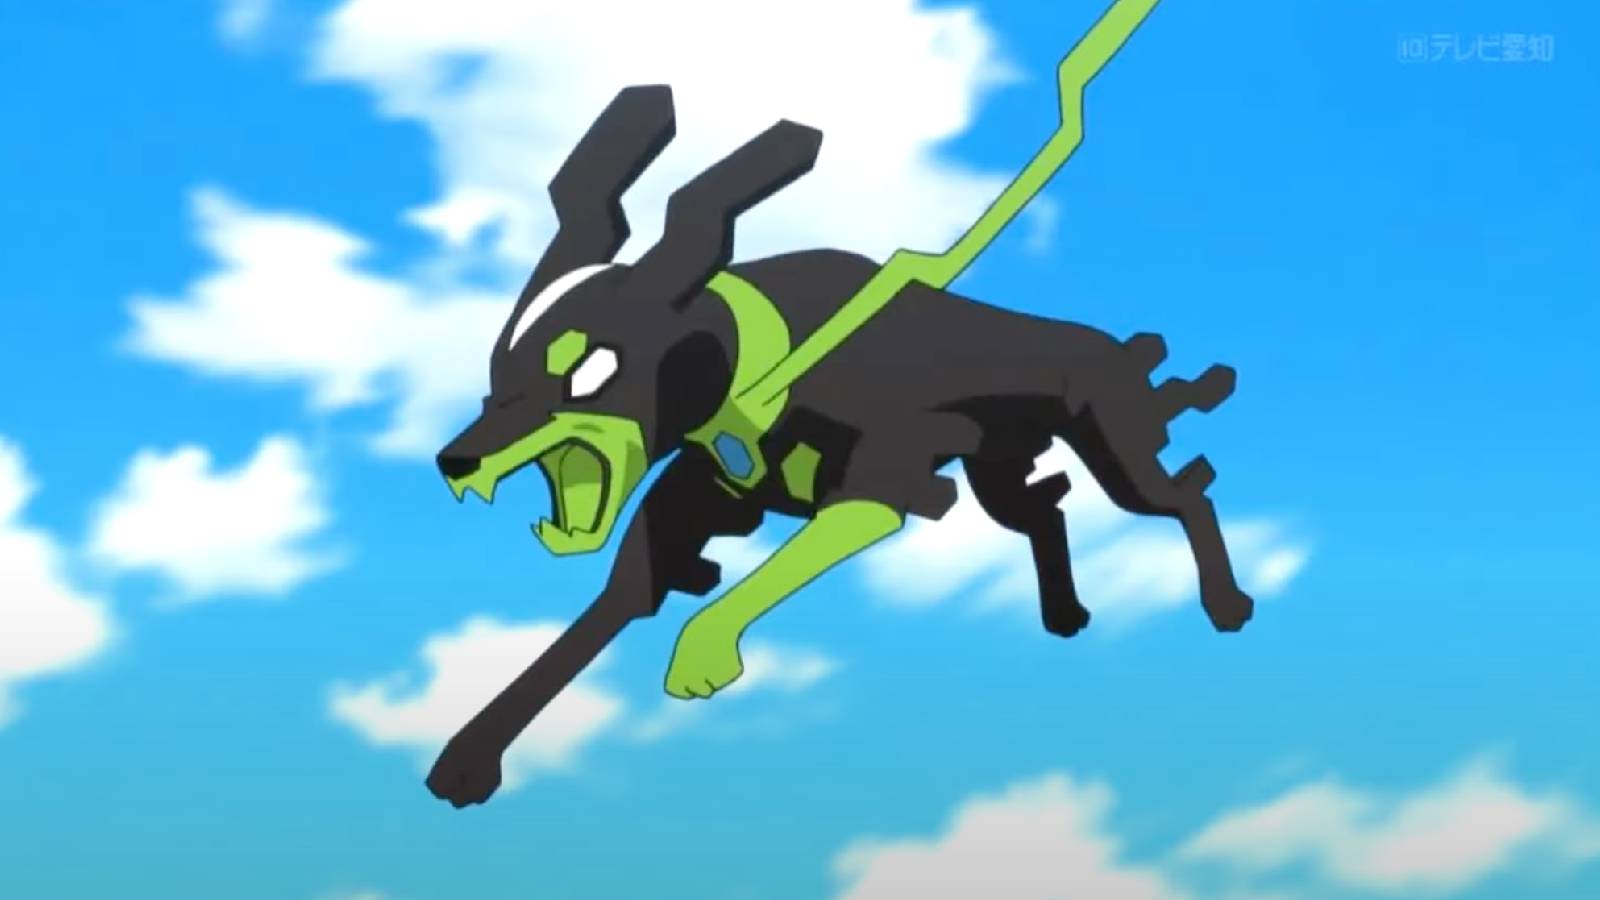 the Pokemon Zygarde leaps through the air